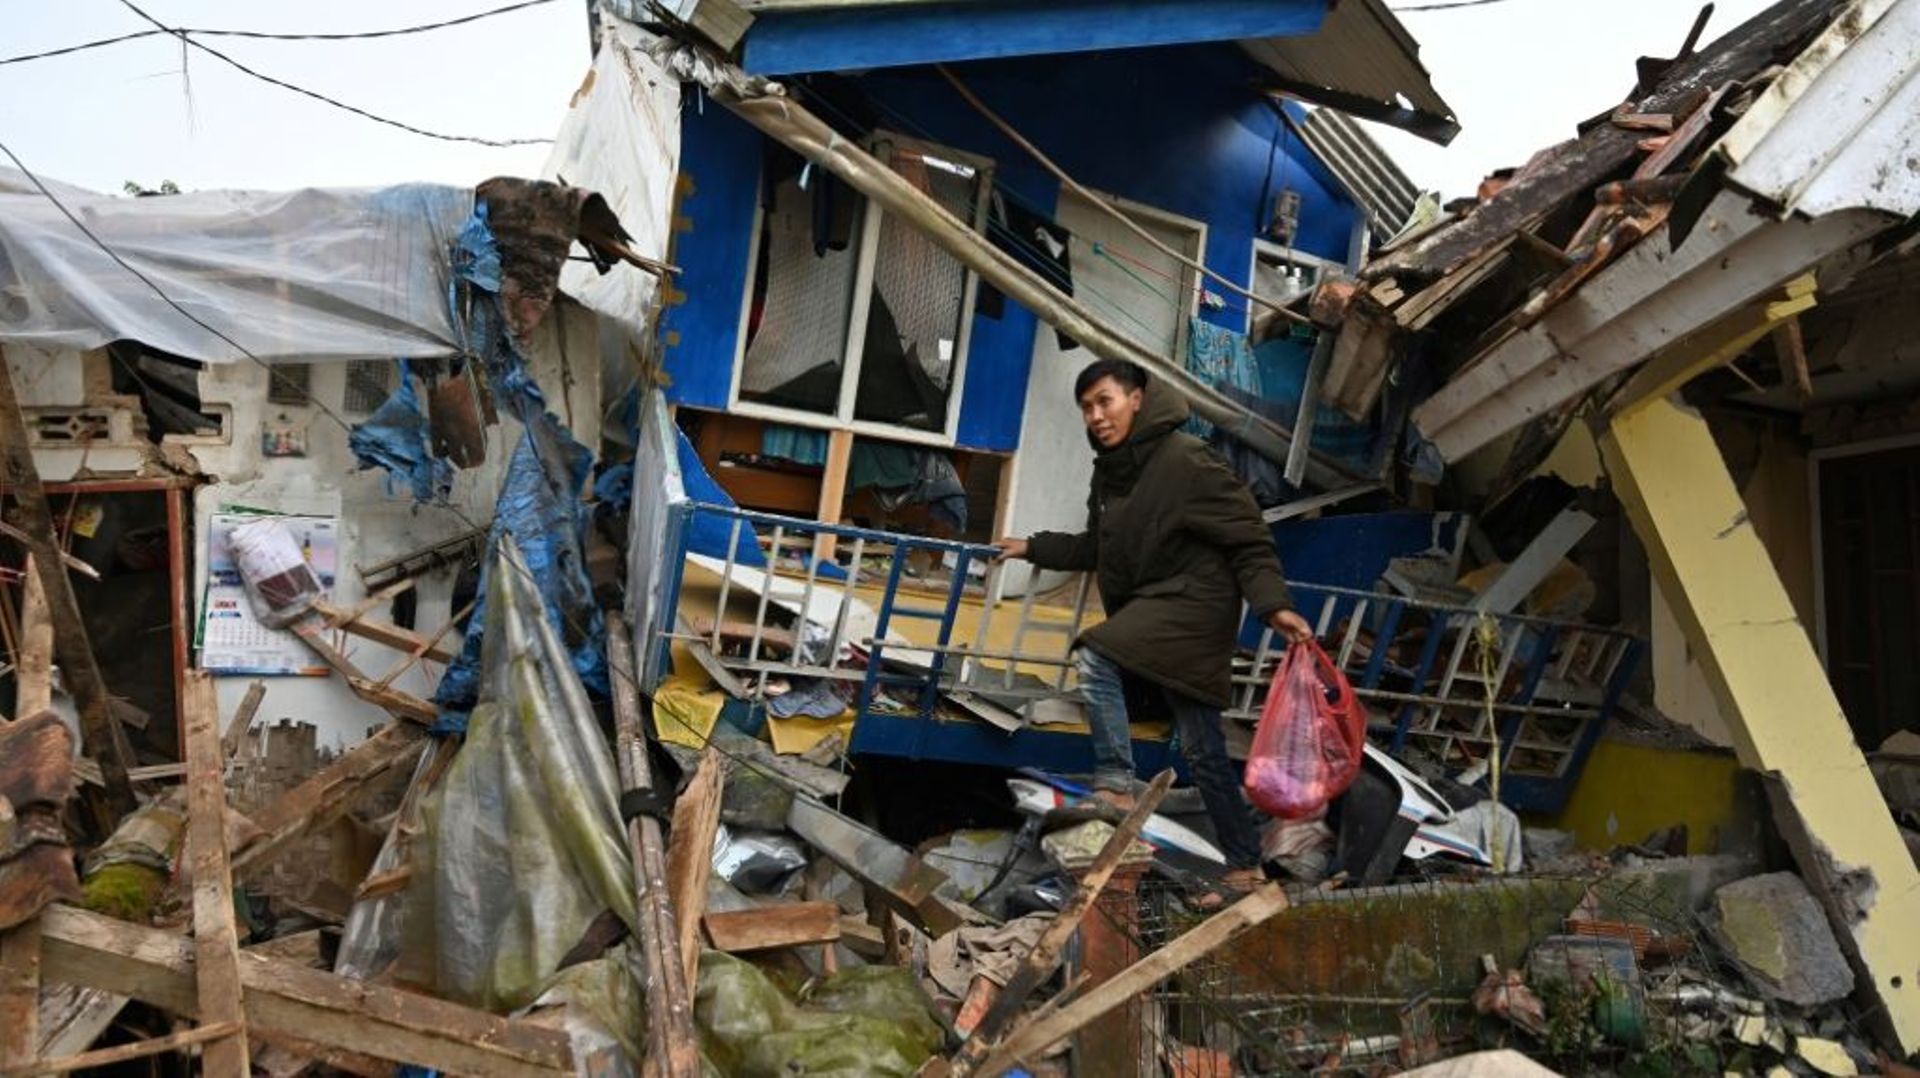 Un homme récupère des affaires dans une maison détruite après un tremblement de terre de magnitude 5,6 qui a fait au moins 162 morts, des centaines de blessés et des disparus à Cianjur, le 22 novembre 2022